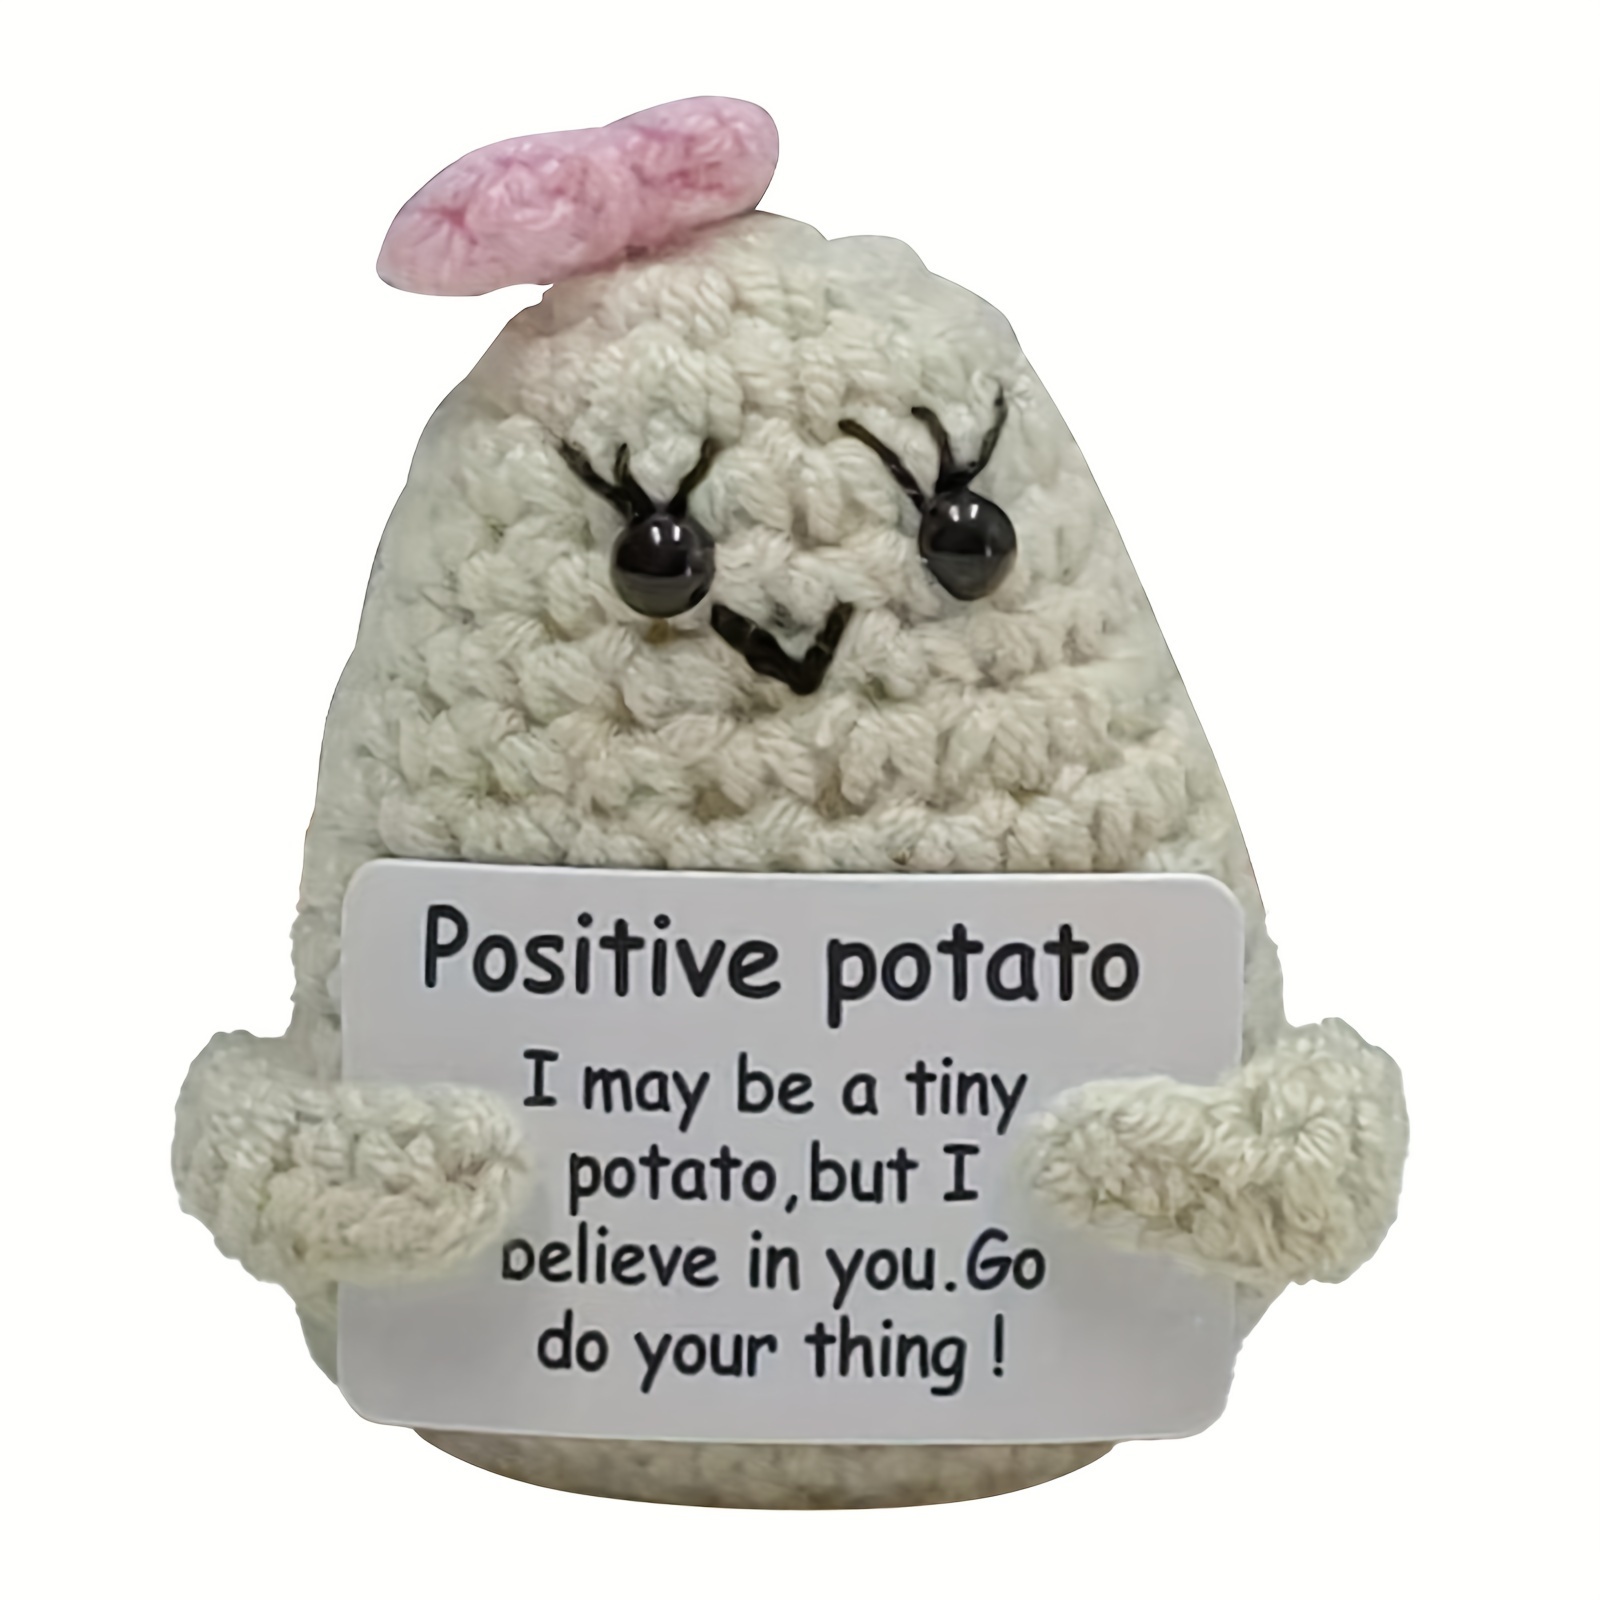  Qyqkfly Funny Positive Life Potato